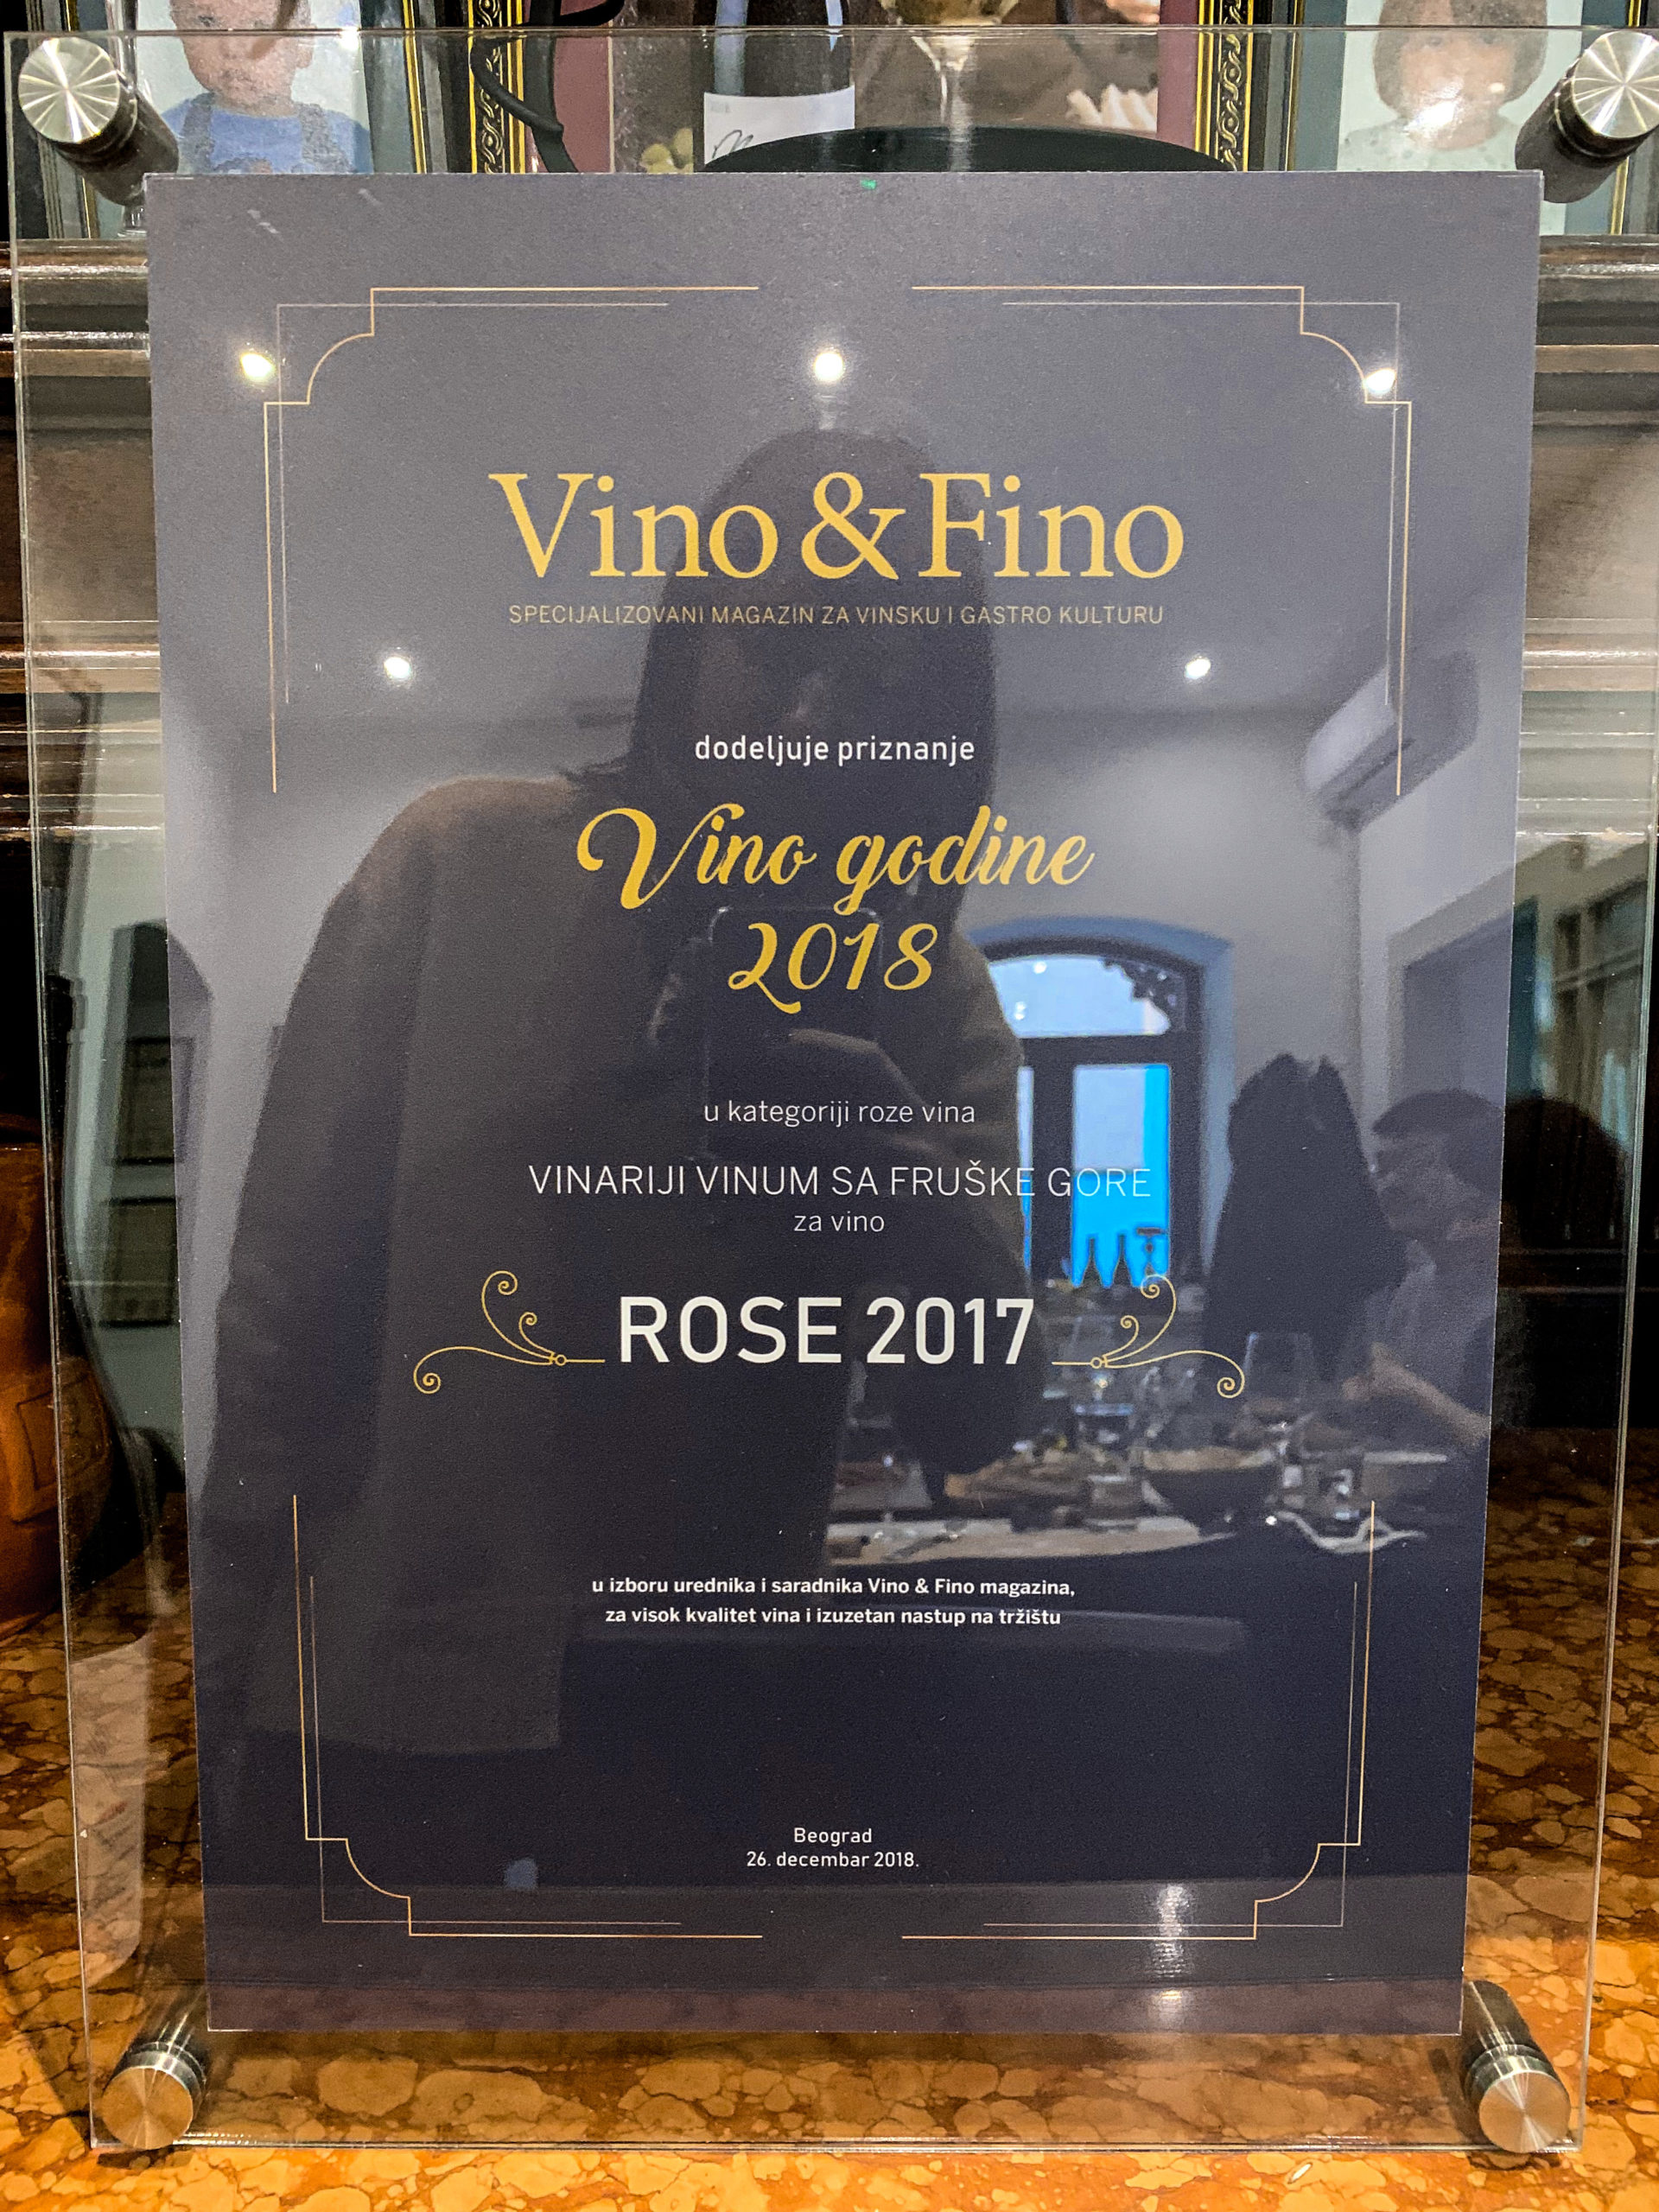 Nagrada Vino & Fino magazina